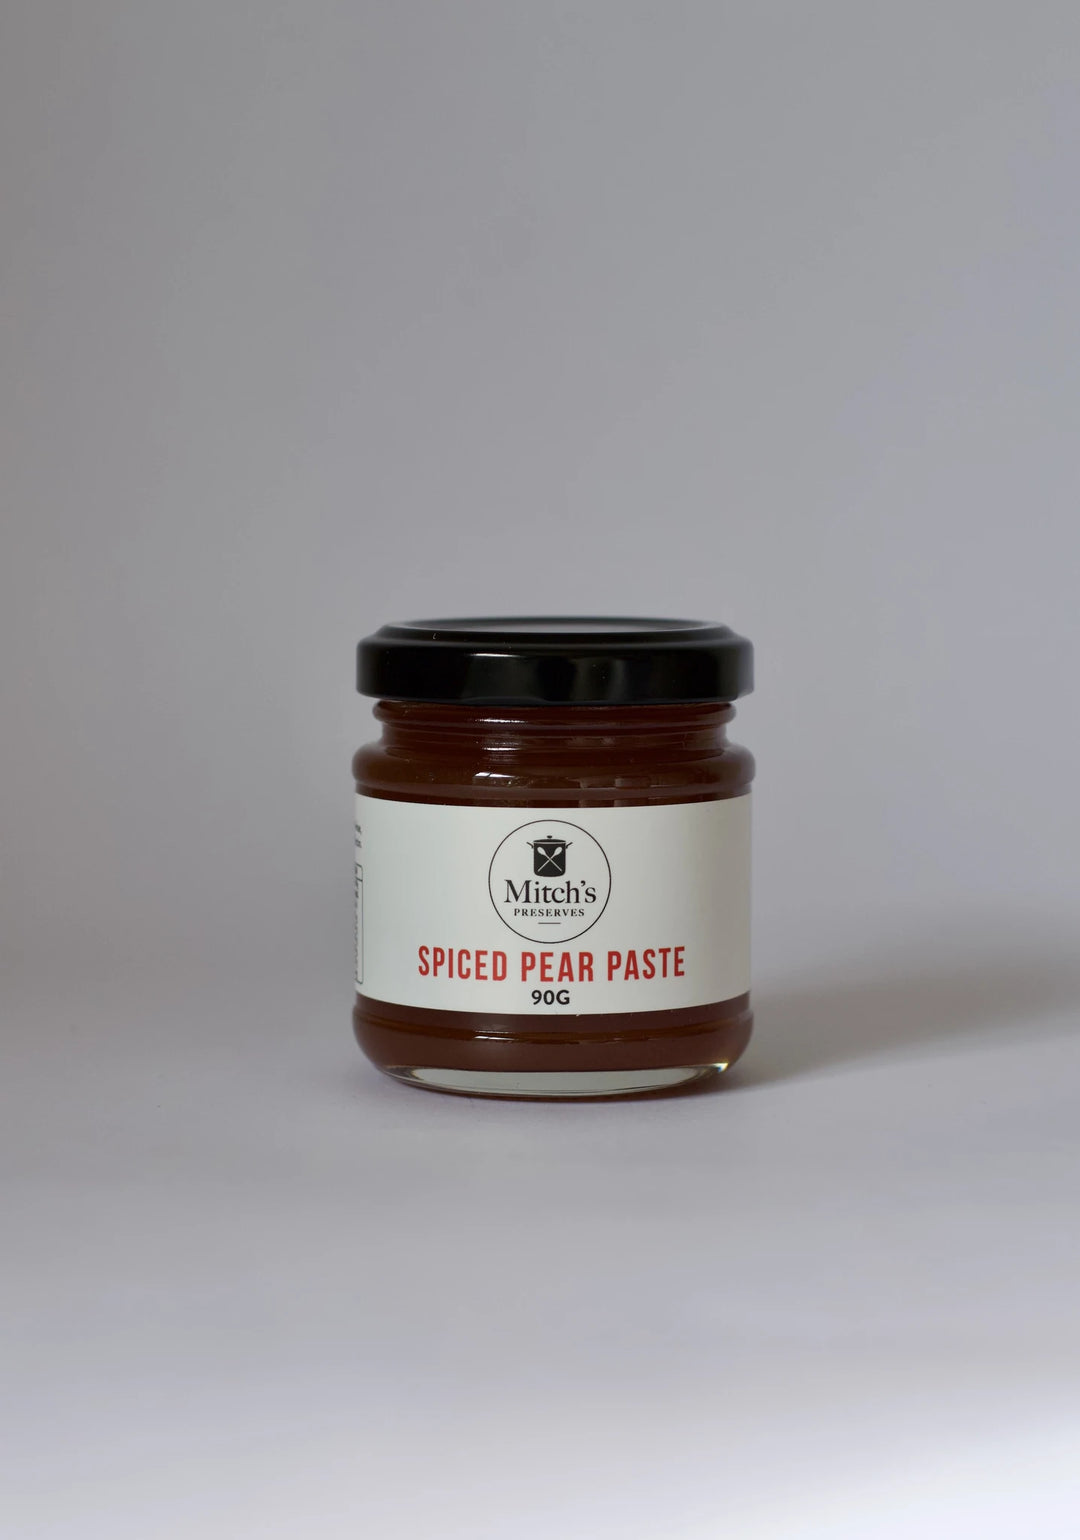 Mitch's Spiced Pear Paste 90g - The Hamilton Hamper